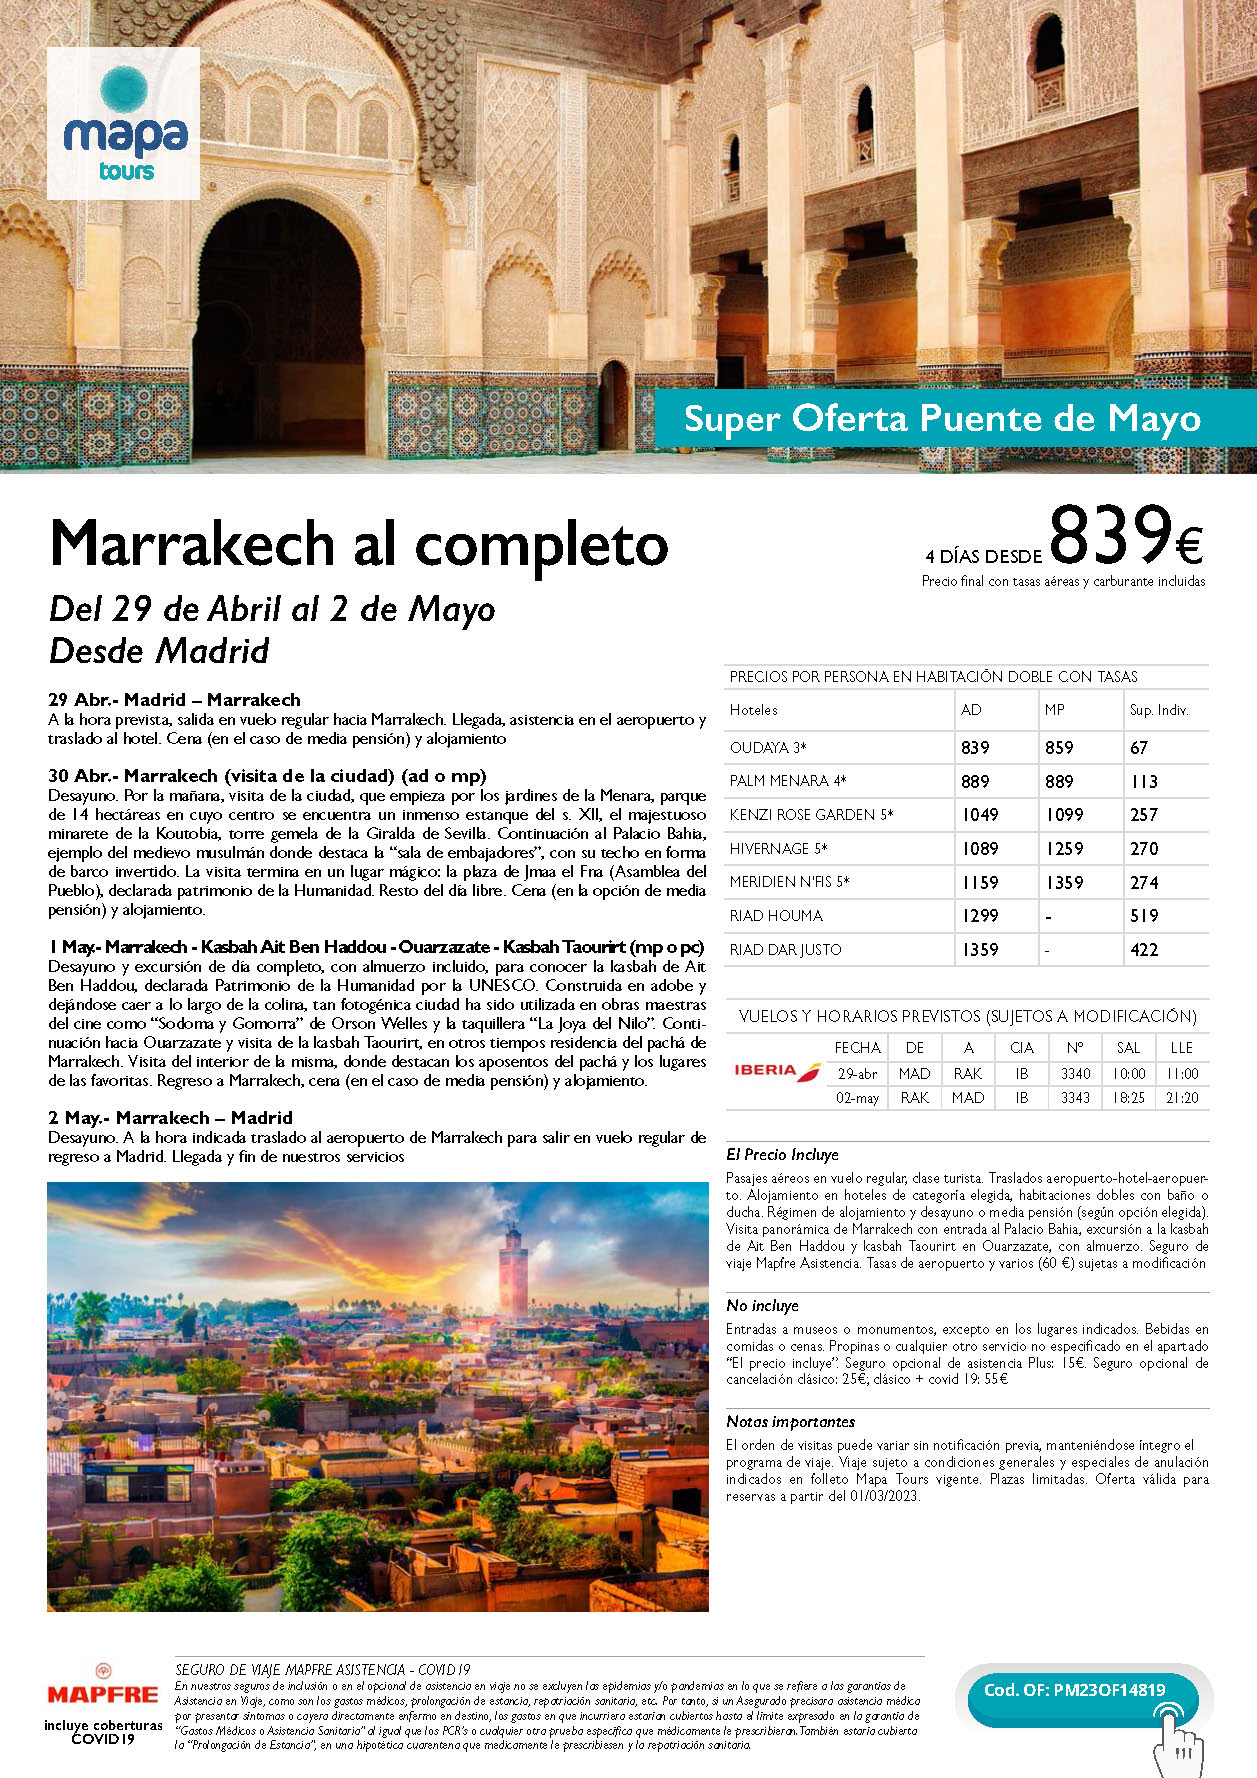 Oferta Mapa Tours Puente de Mayo 2023 Marrakech al completo 4 dias salida 29 abril en vuelo directo desde Madrid